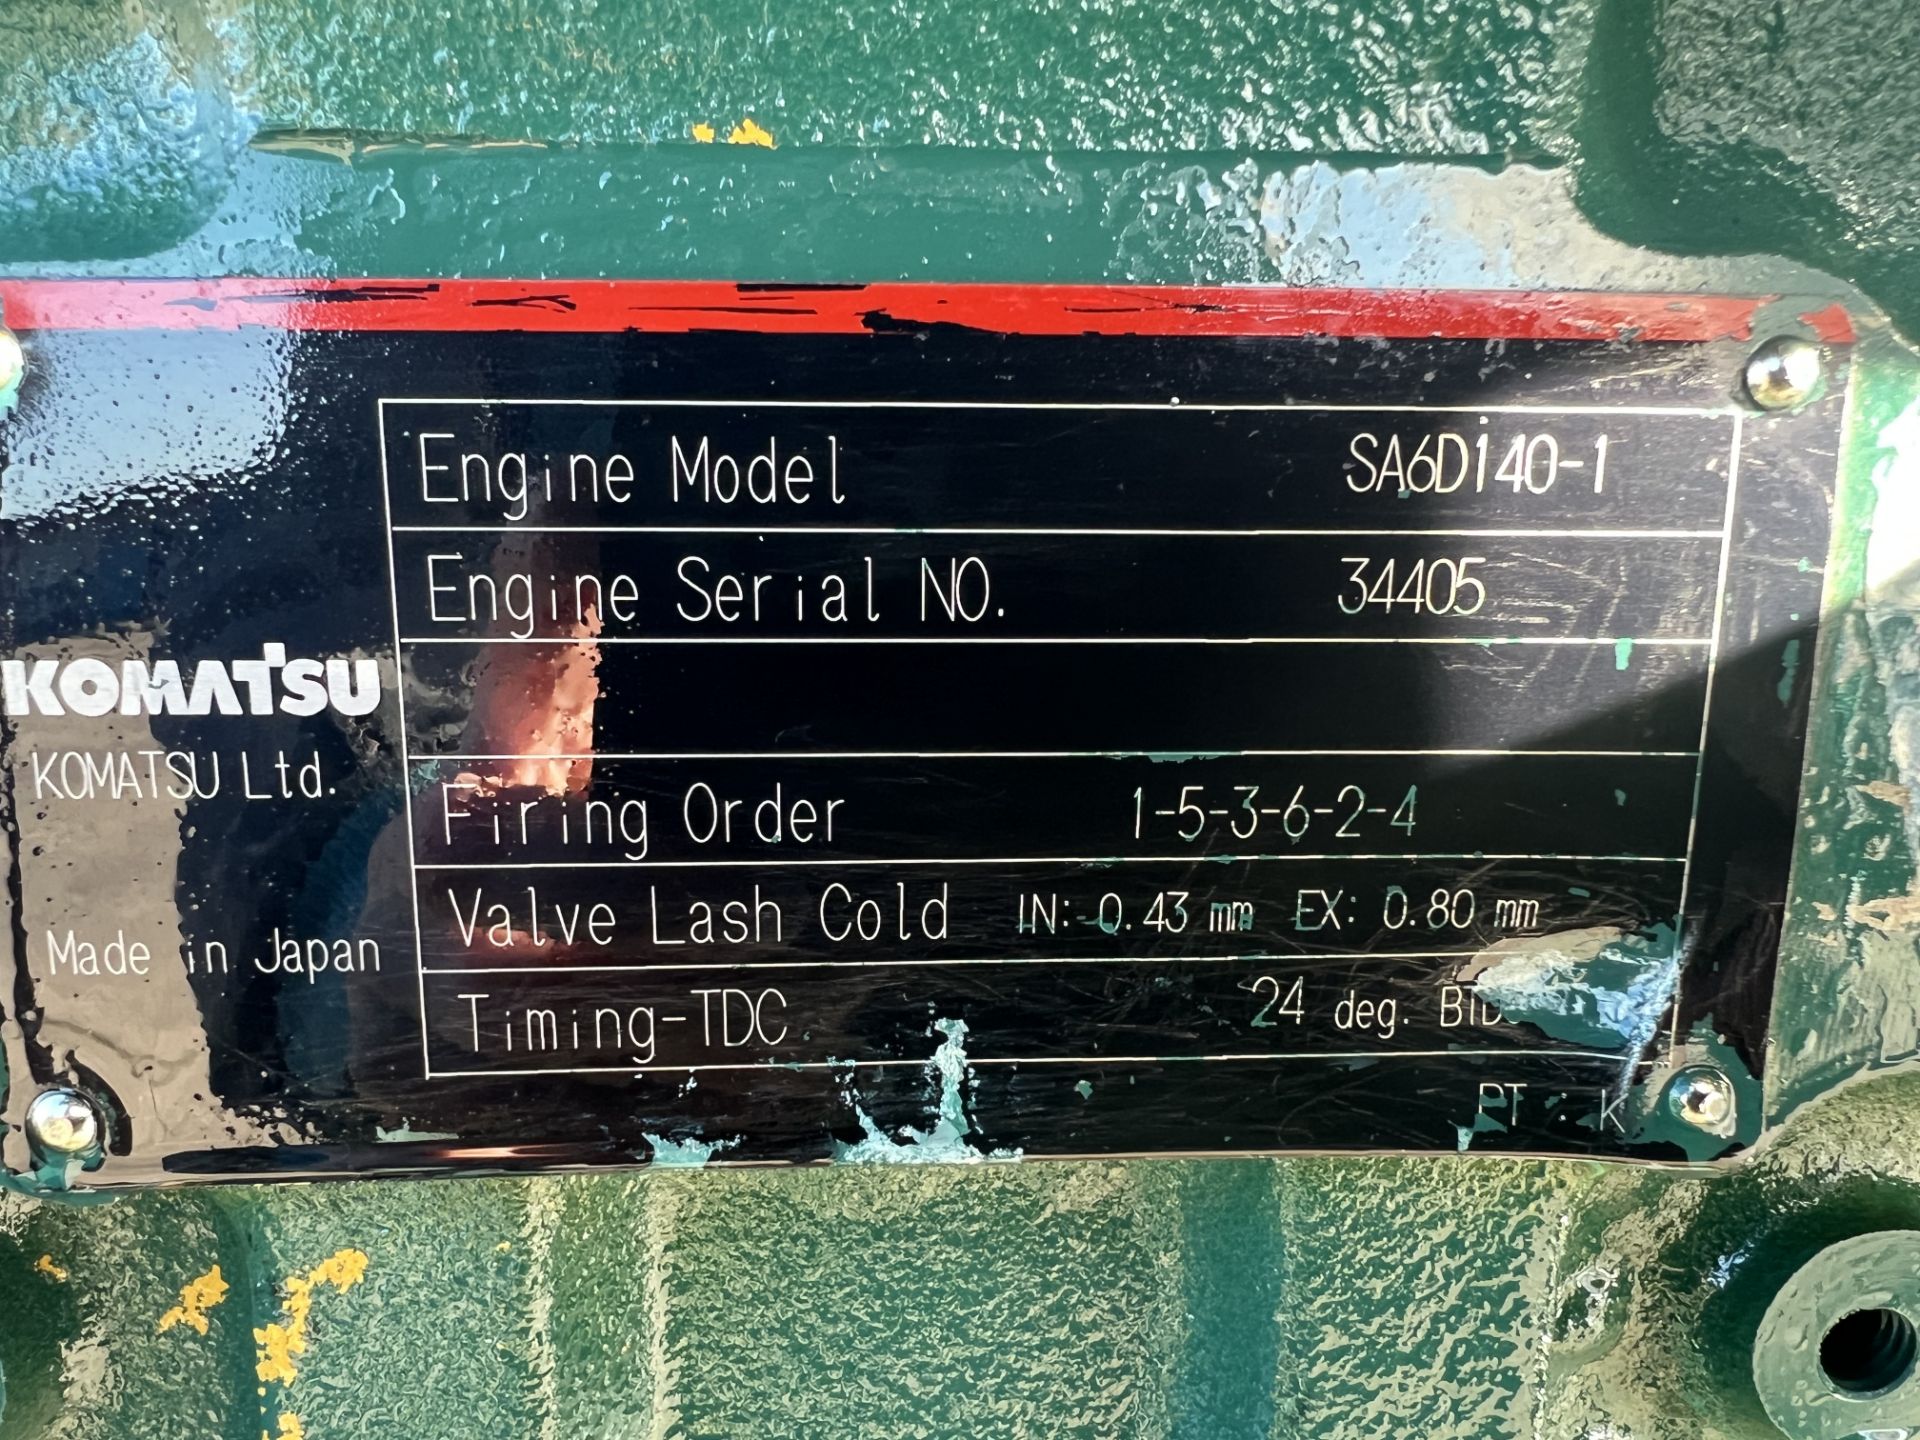 Komatsu SA6D140-1 Marine Diesel Engine Unused - Image 6 of 7